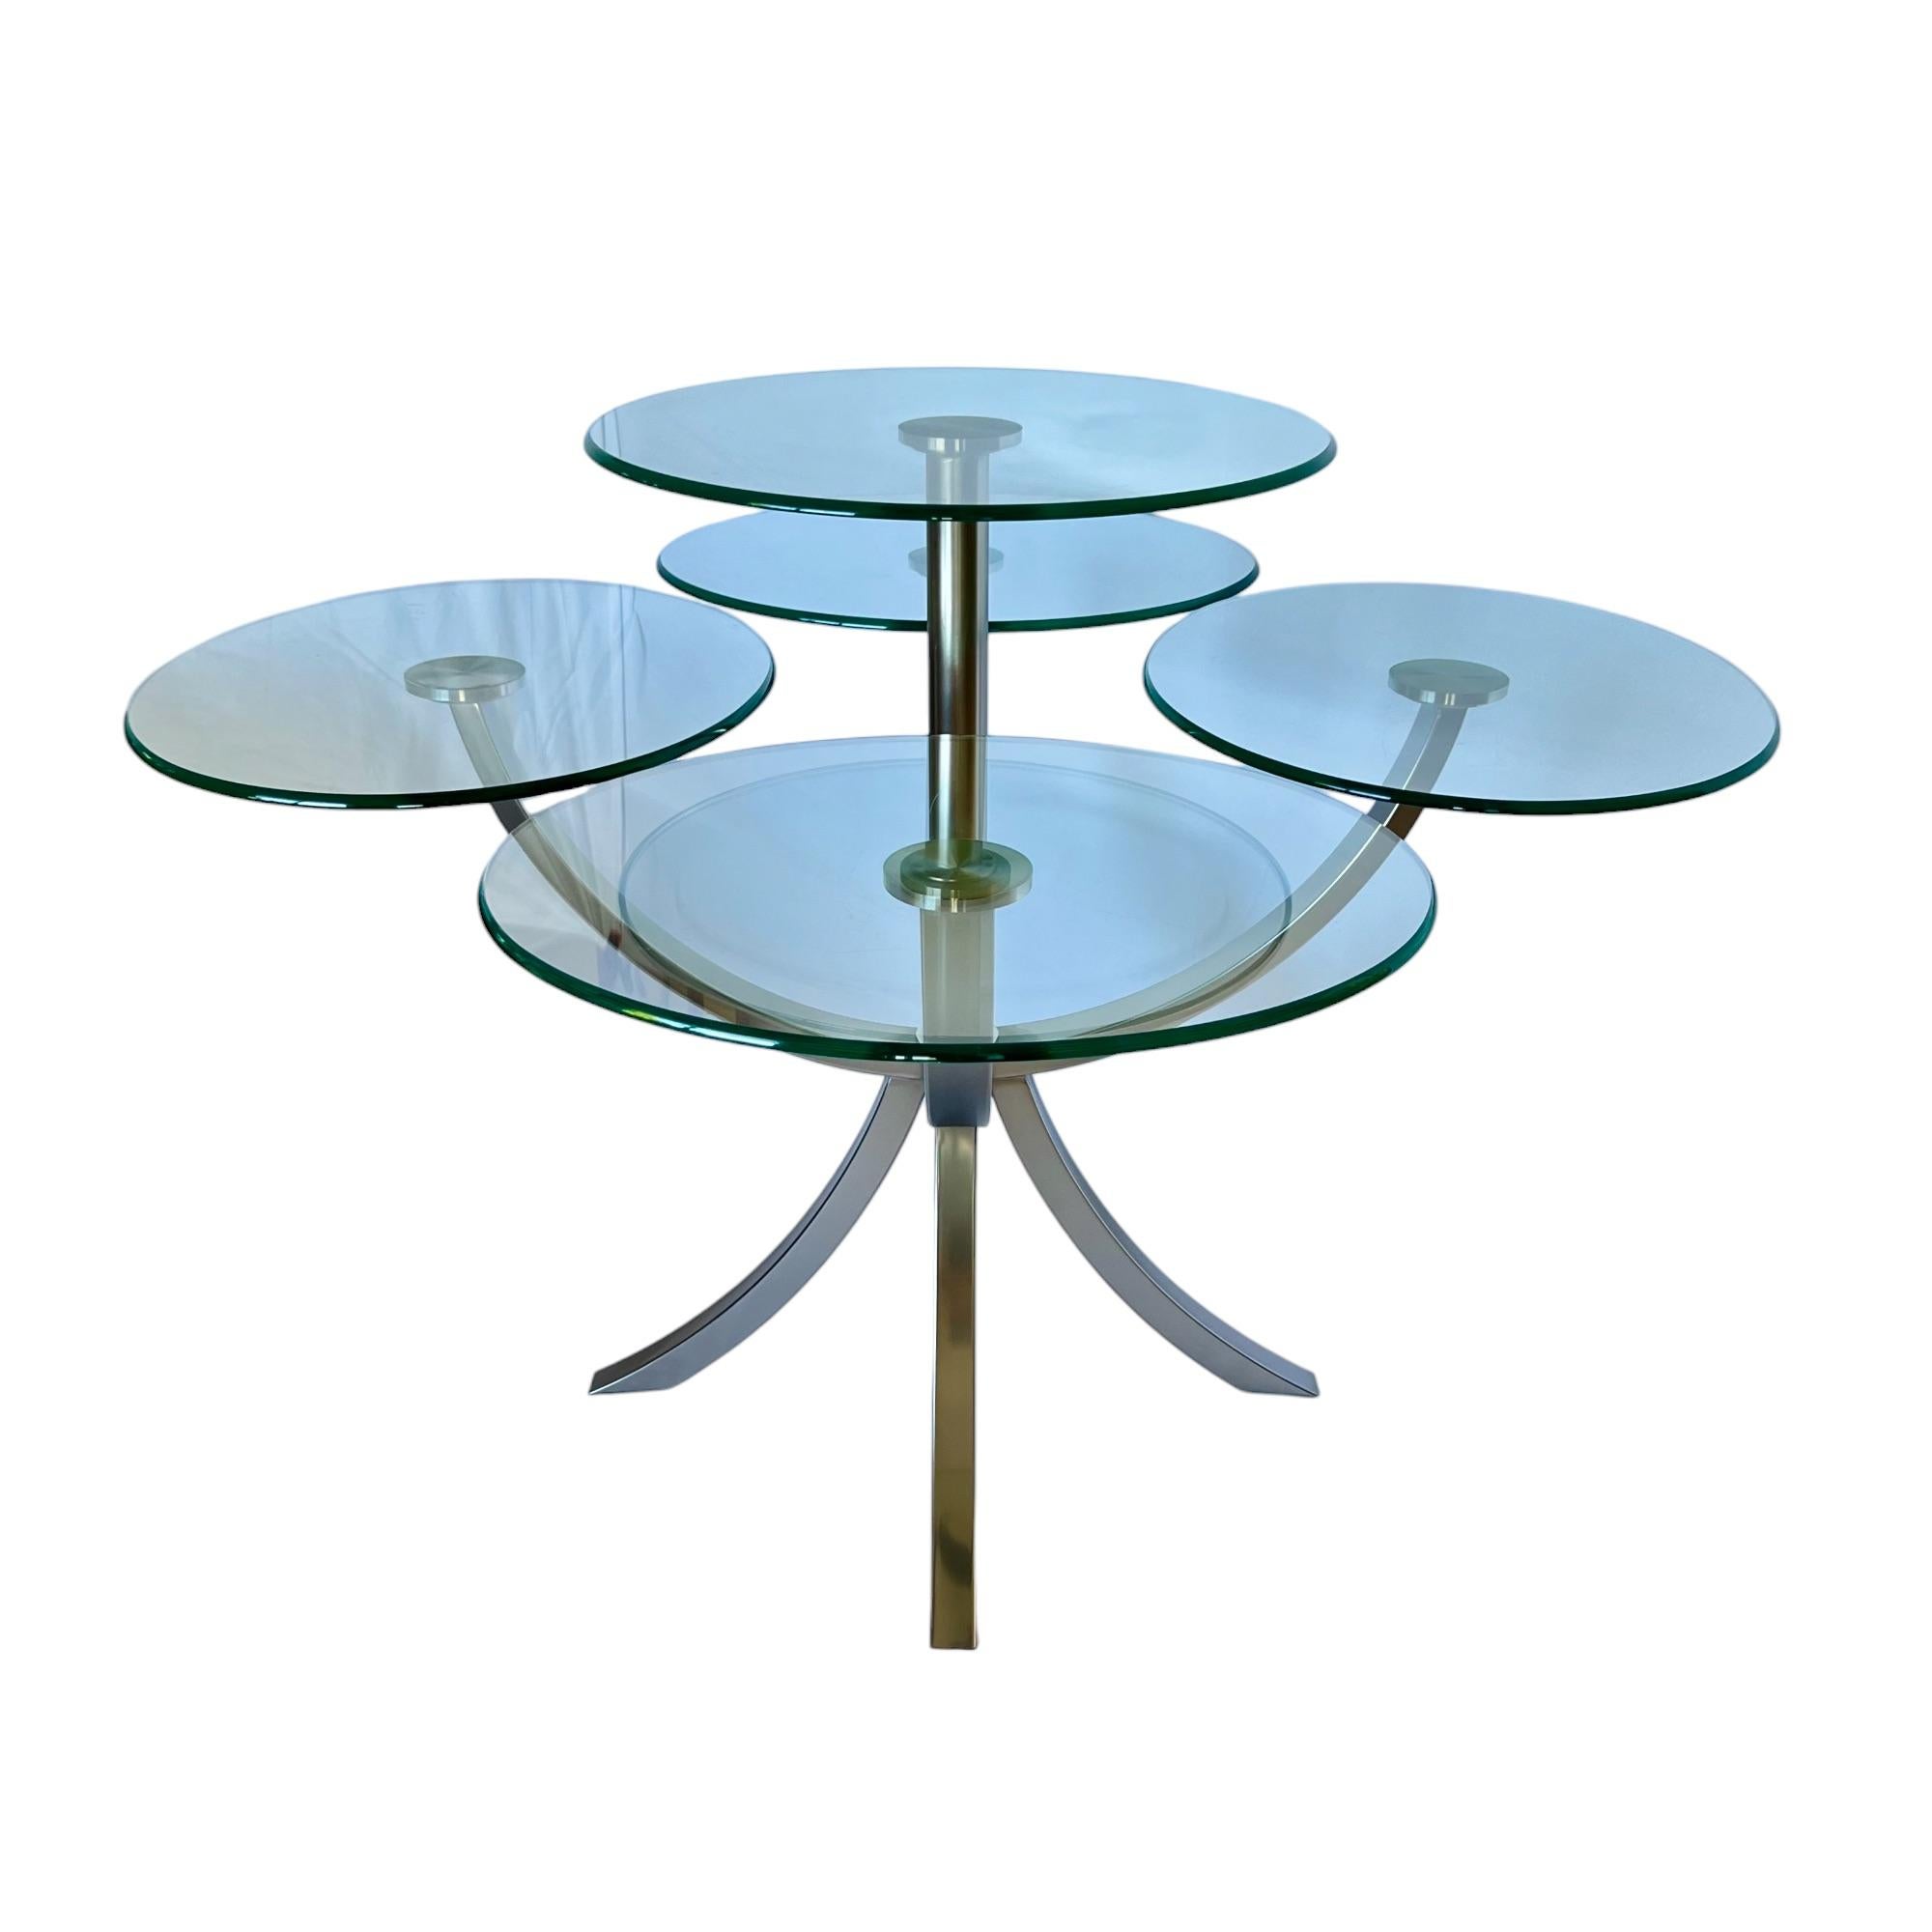 Fin du 20e siècle Table de salle à manger Circle of Life en acier et verre par DIA, années 1980